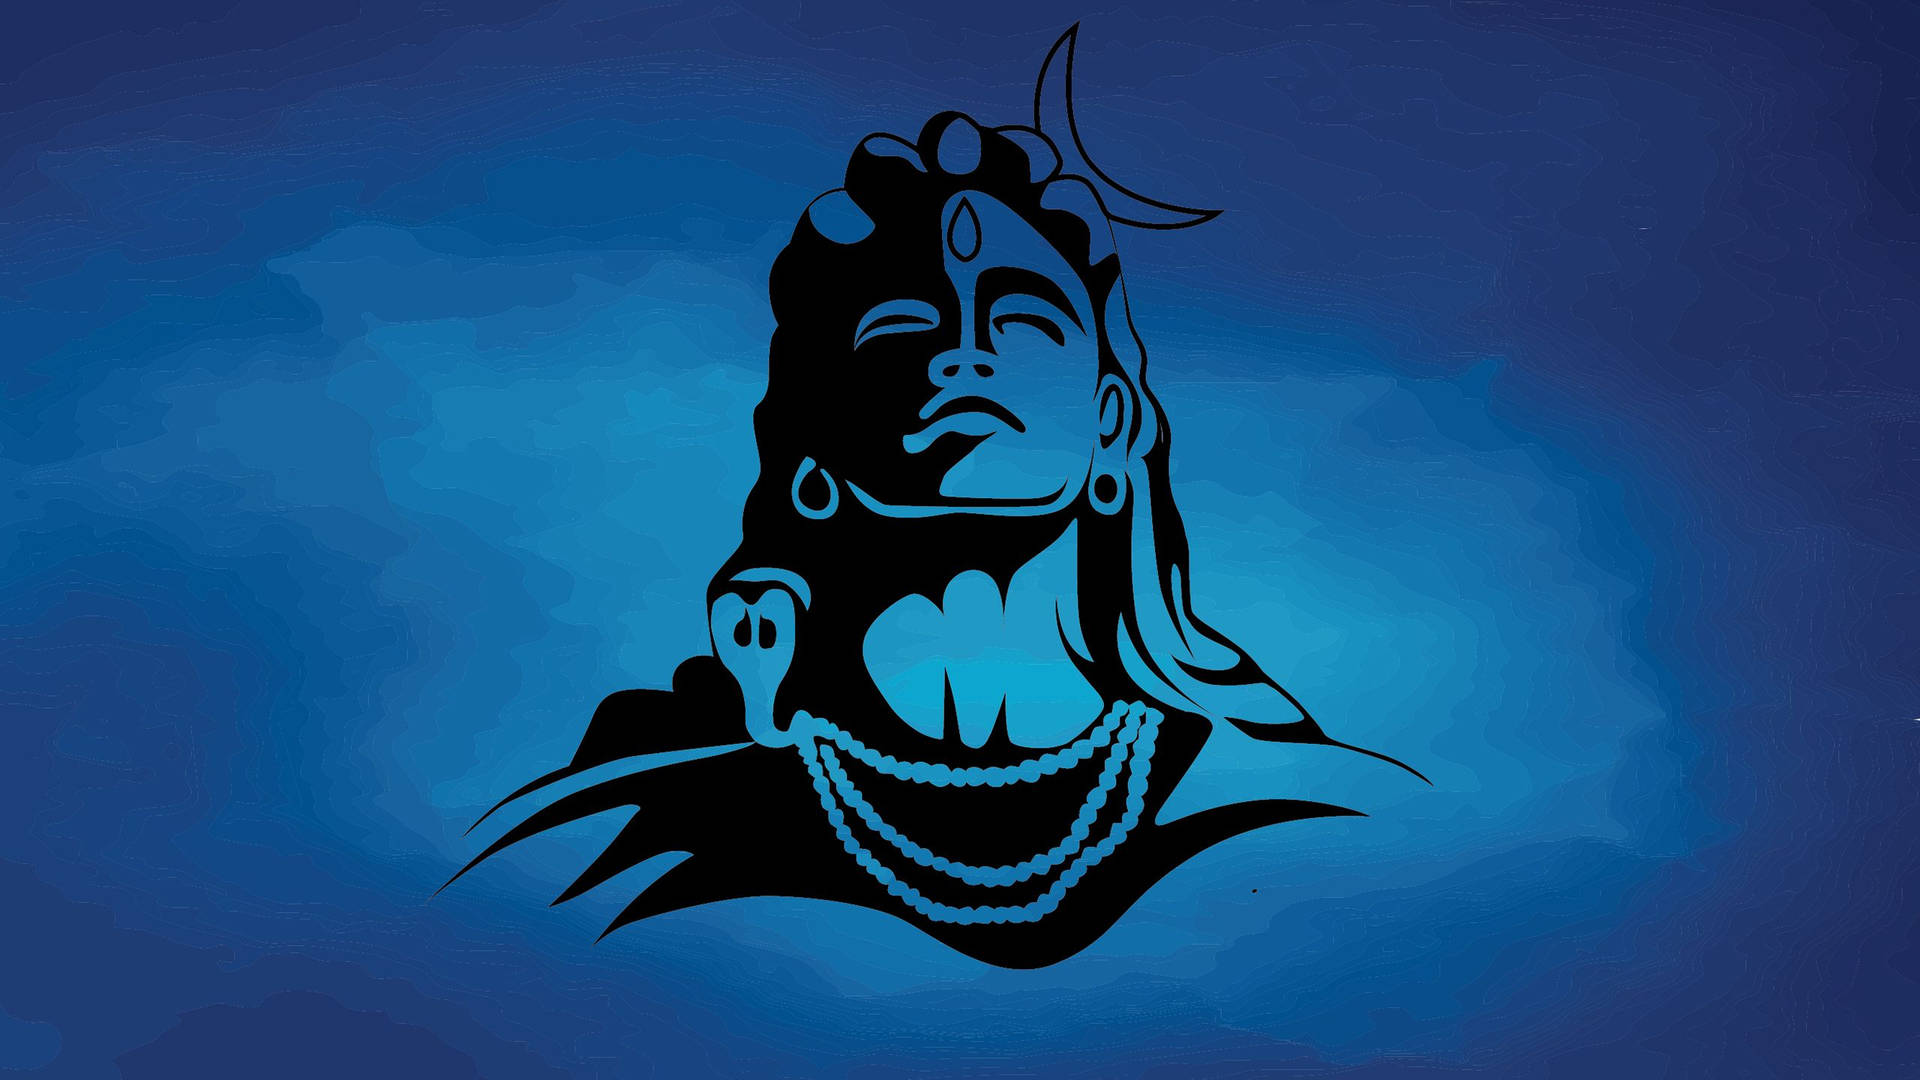 Dark Mahadev Painting On Blue Hd Wallpaper